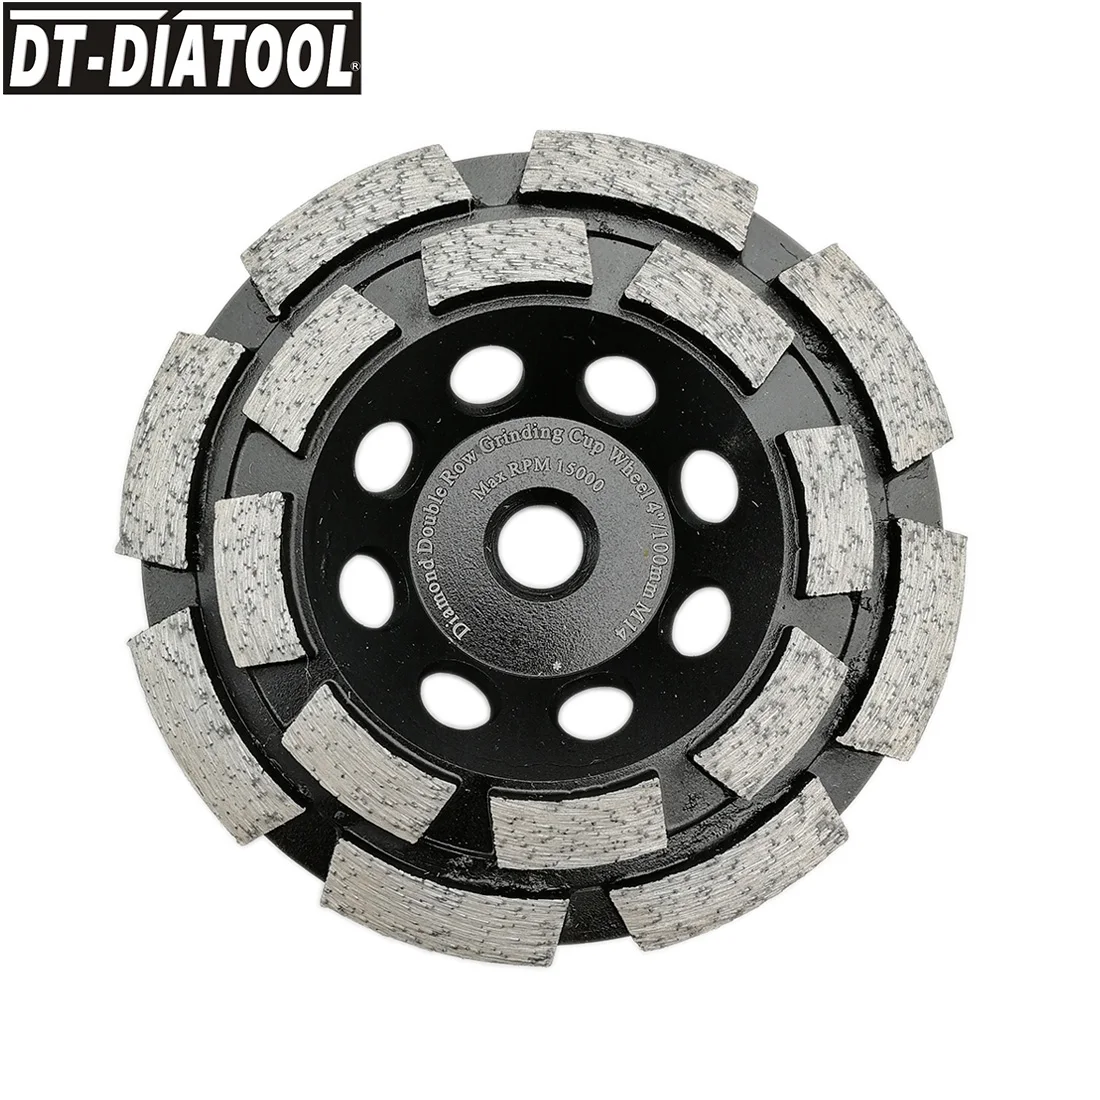 DT-DIATOOL 1 шт. Dia100mm Diamond двухрядные чашевидный шлифовальный круг 4 дюйма для бетонного кирпича твердый камень Гранит Мрамор с M14 нить